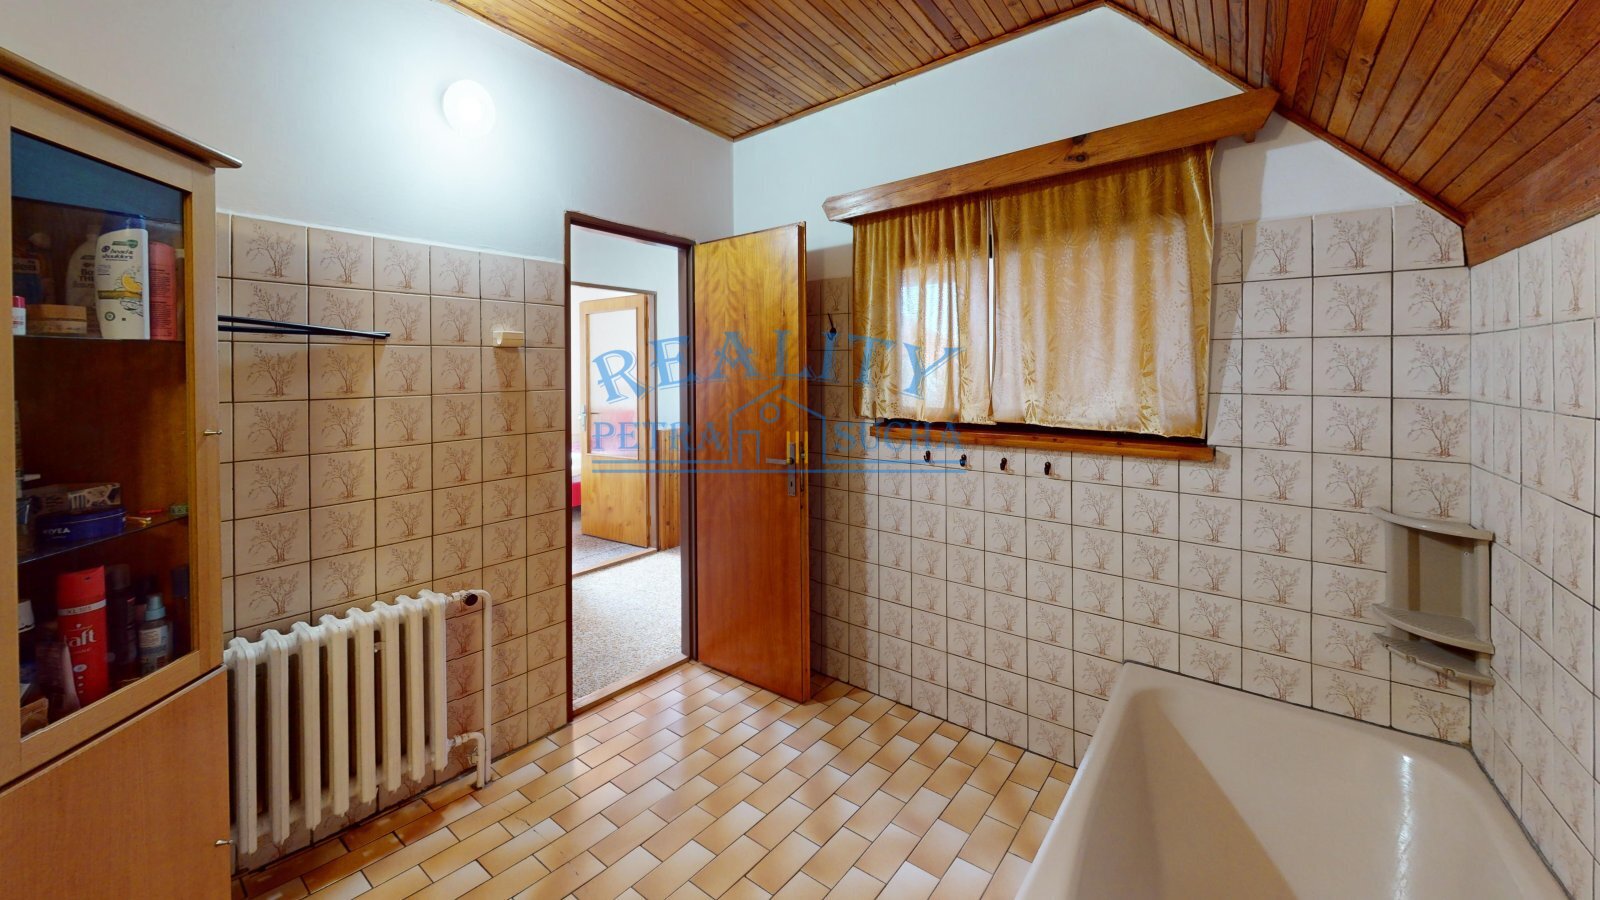 Msene-Lazne-Bathroom.jpg